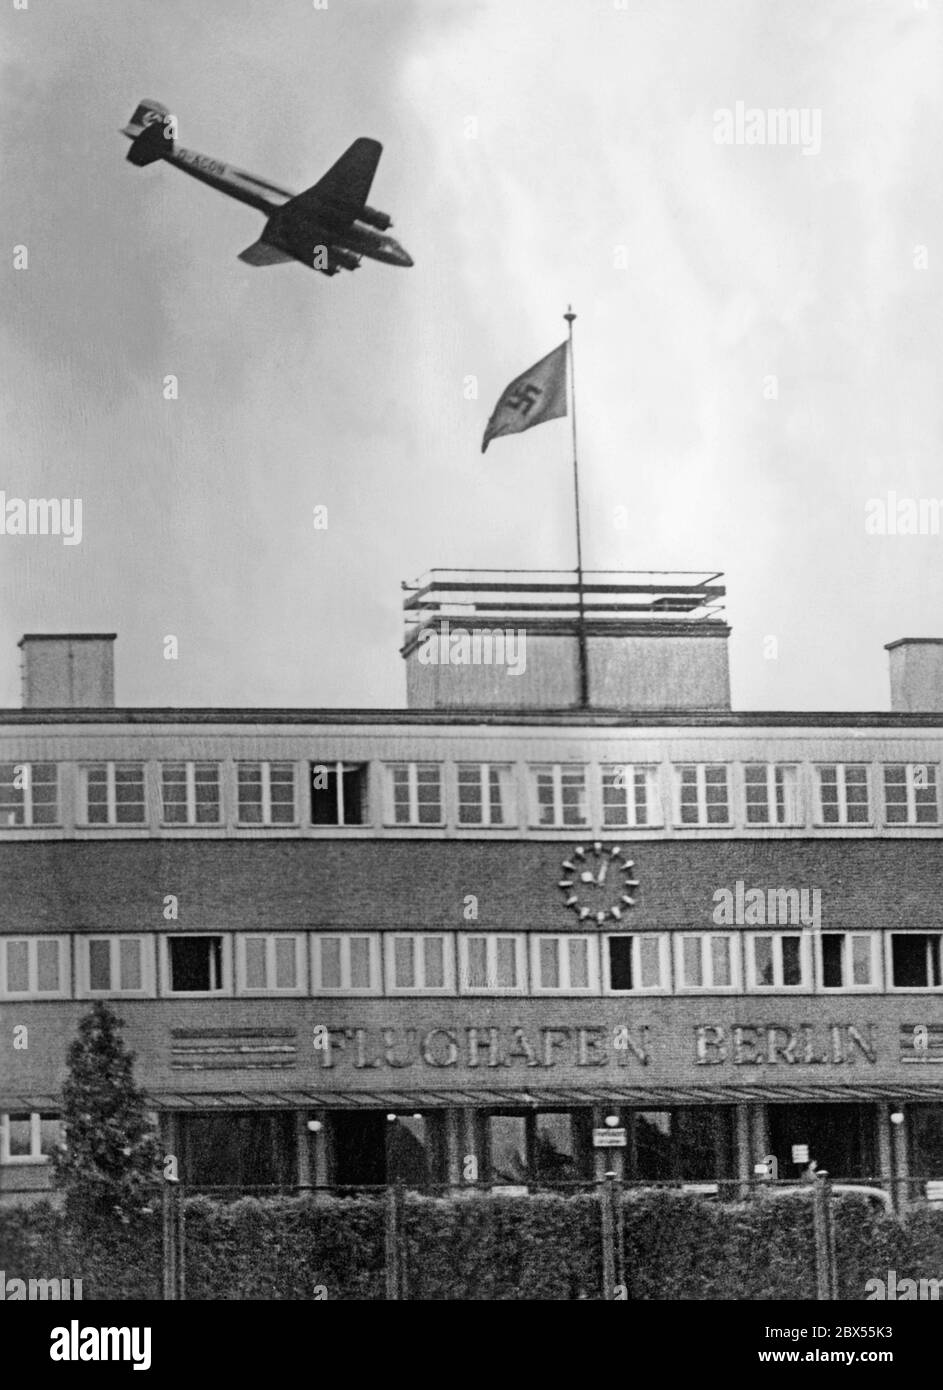 La foto mostra l'atterraggio di un aereo transatlantico, un Focke Wulf 200 'Condor' a quattro motori (numero di identificazione: D-ACON), che atterrò all'aeroporto Tempelhof di Berlino esattamente 20 ore dopo il suo decollo a New York alle 10:03. Foto Stock